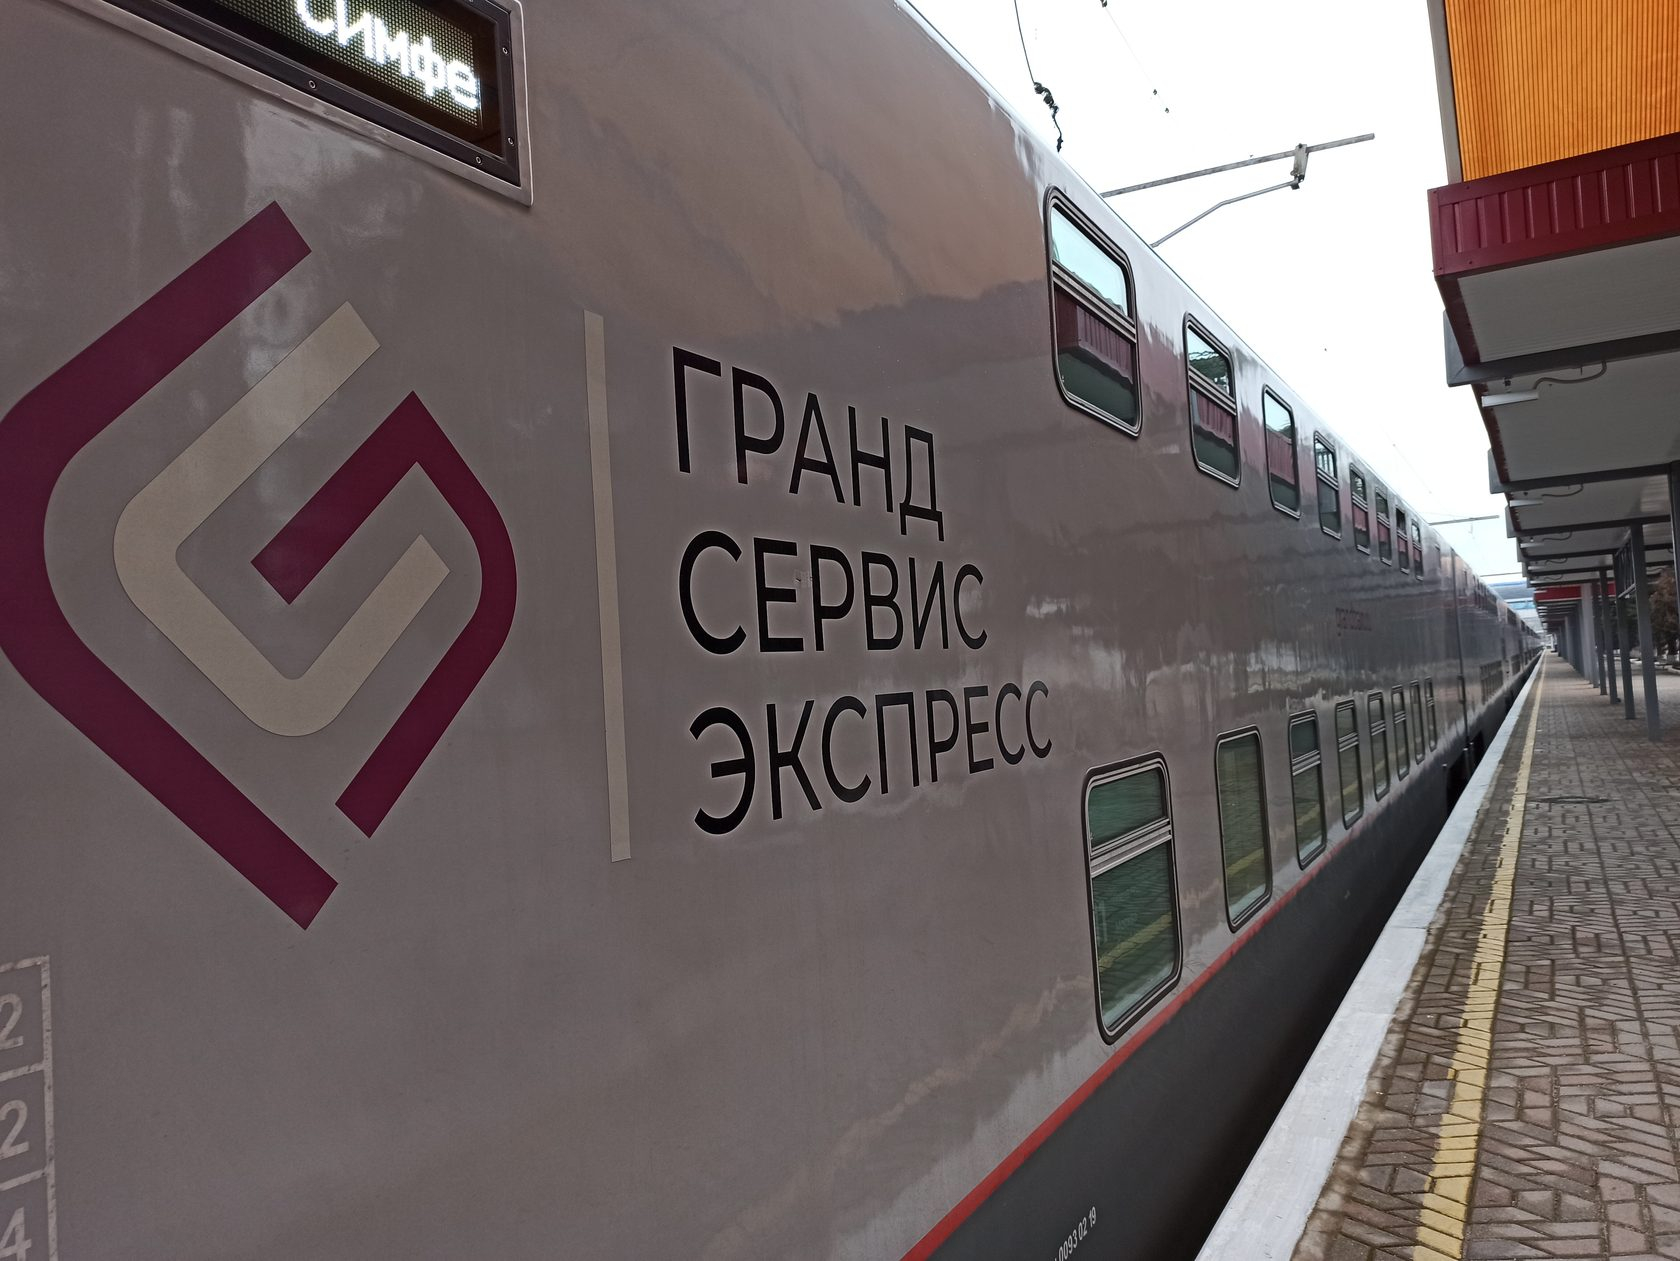 028 поезд москва симферополь